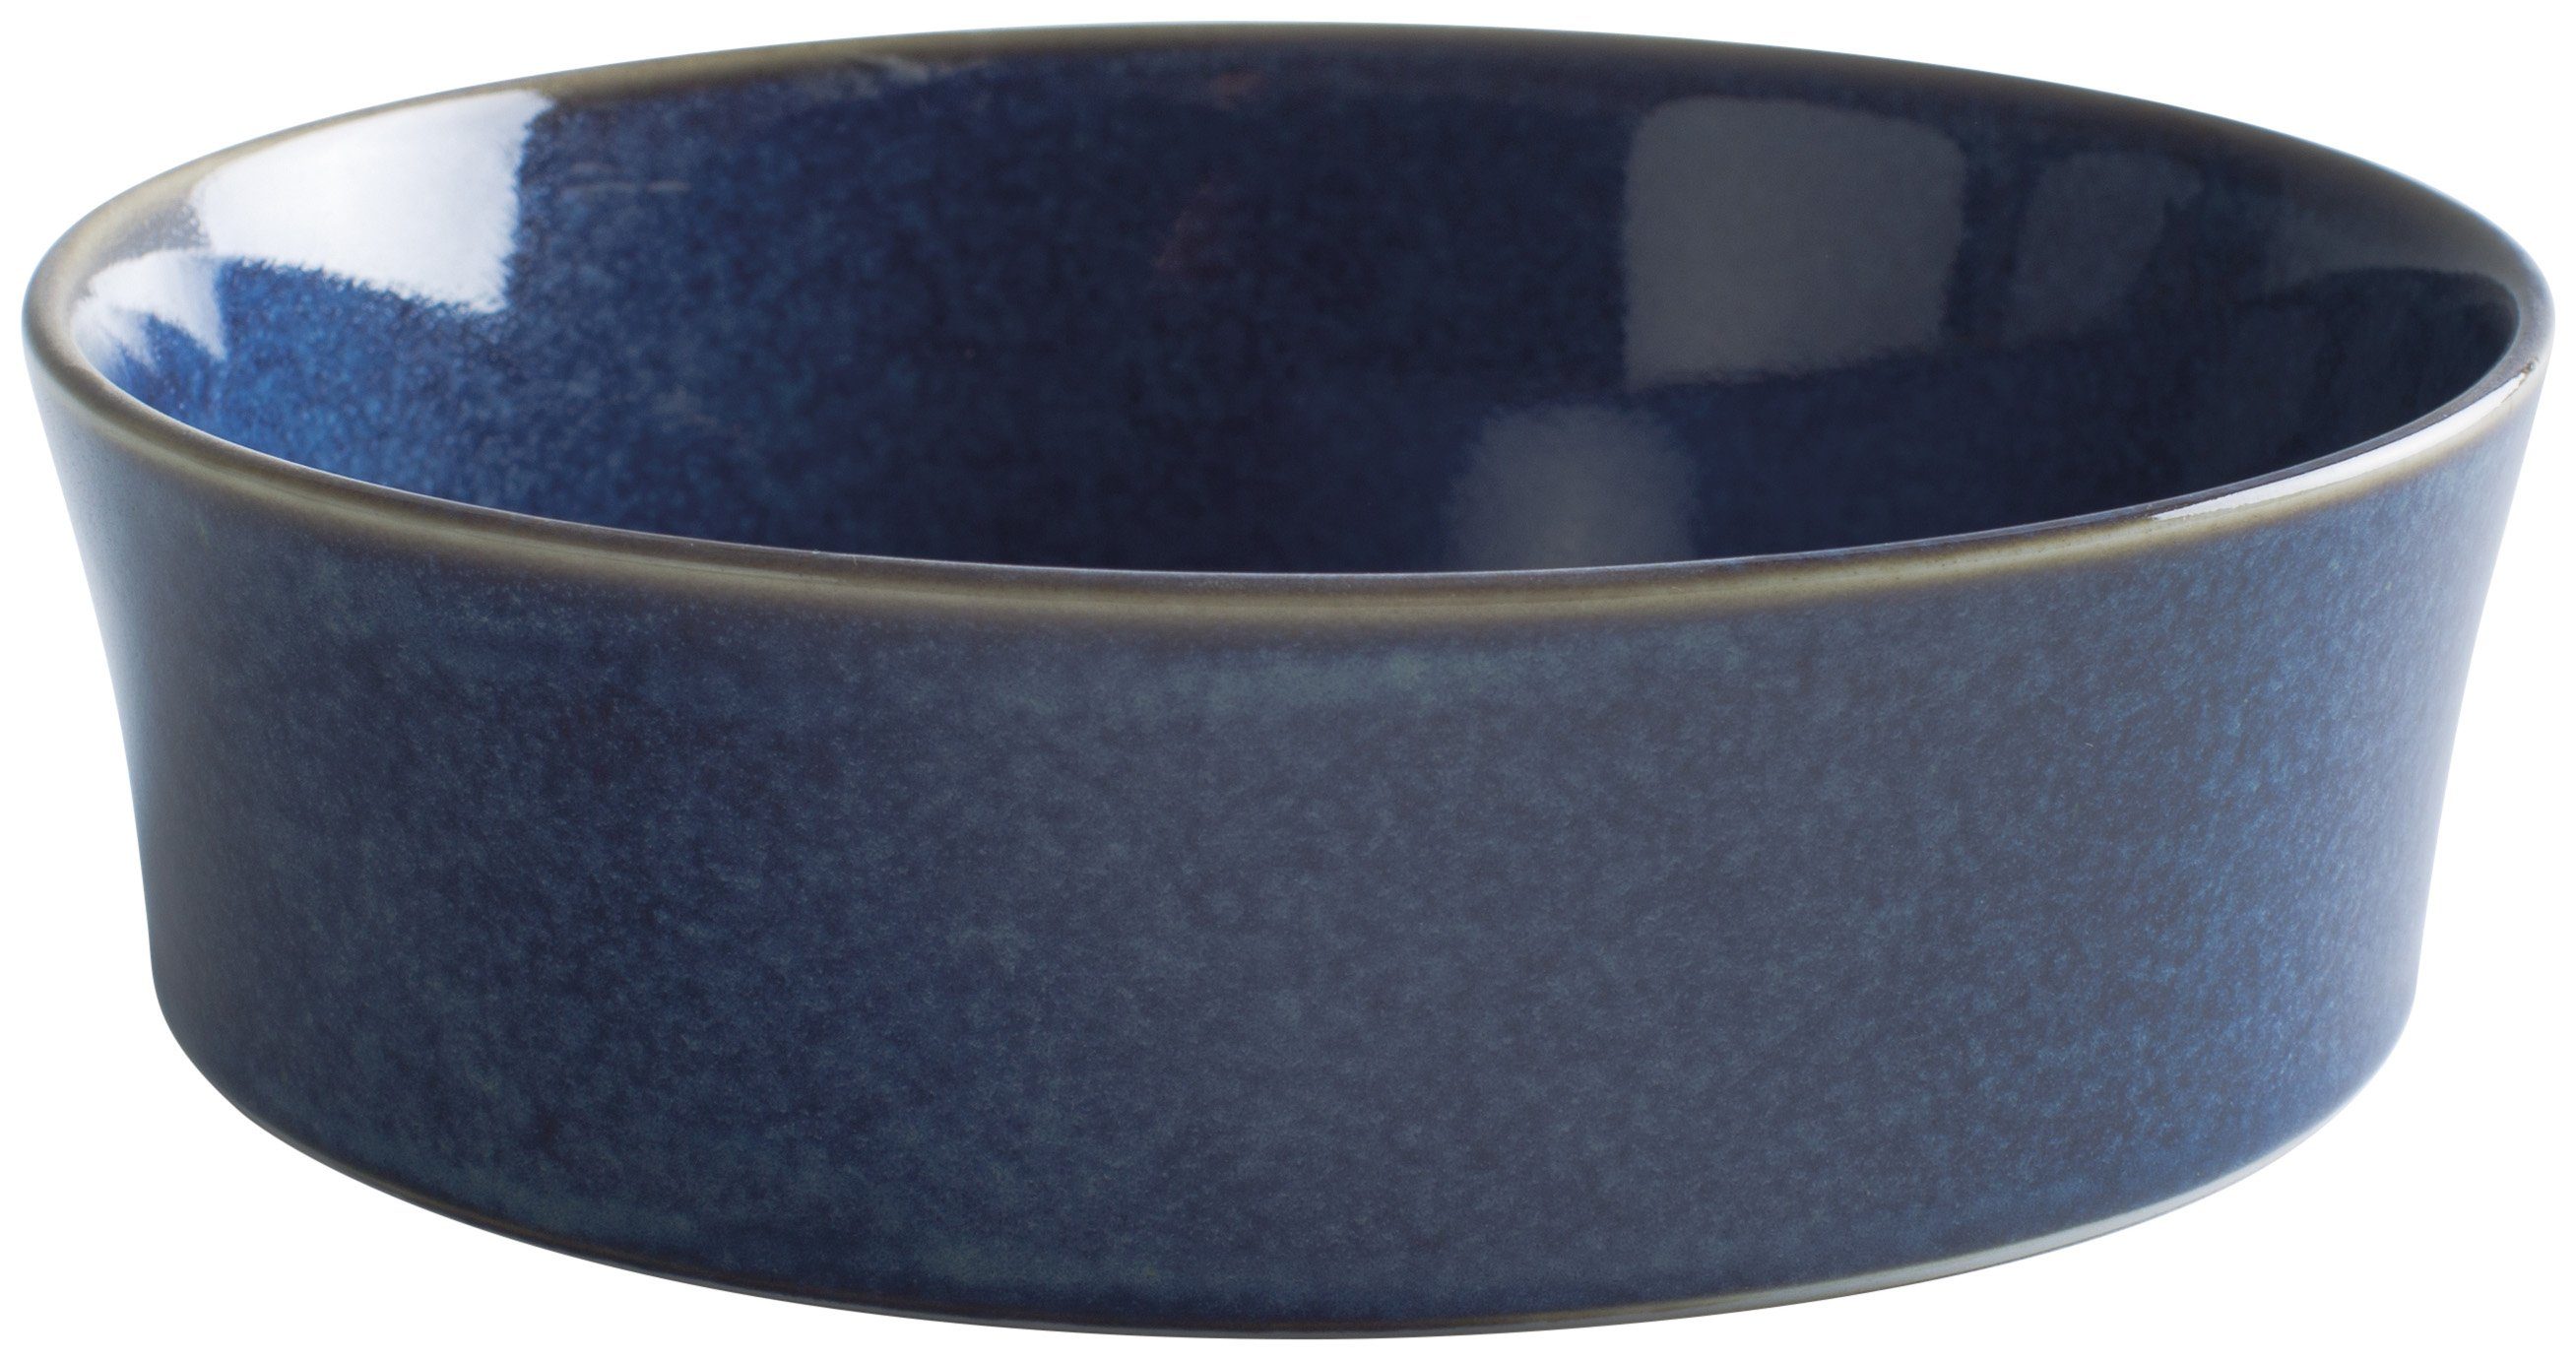 Germany Auflaufform Kahla Homestyle Handglasiert, blue Porzellan, in Made rund, atlantic